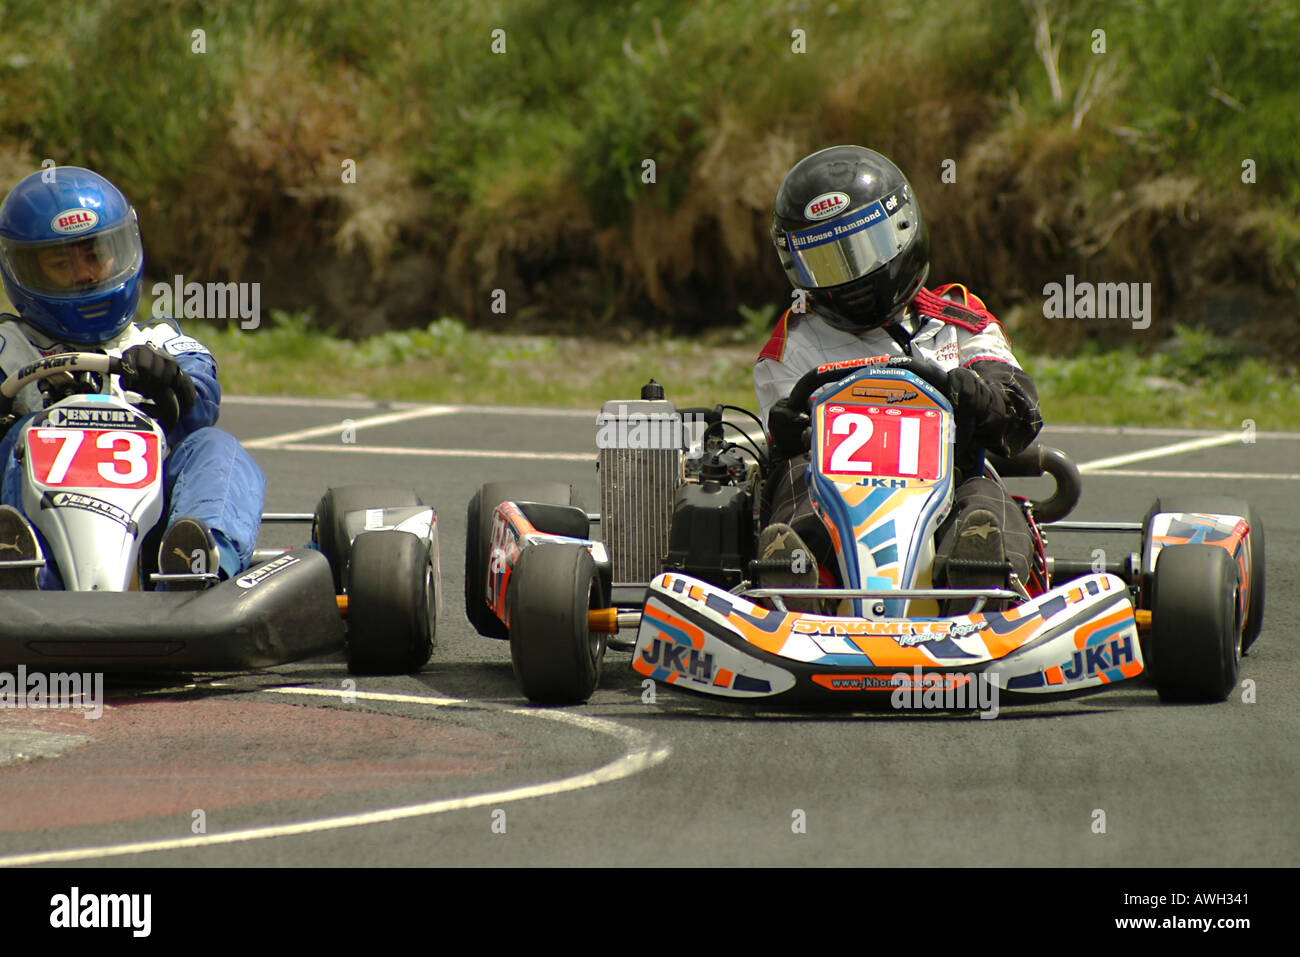 Kart racers in Motorsport action Stock Photo